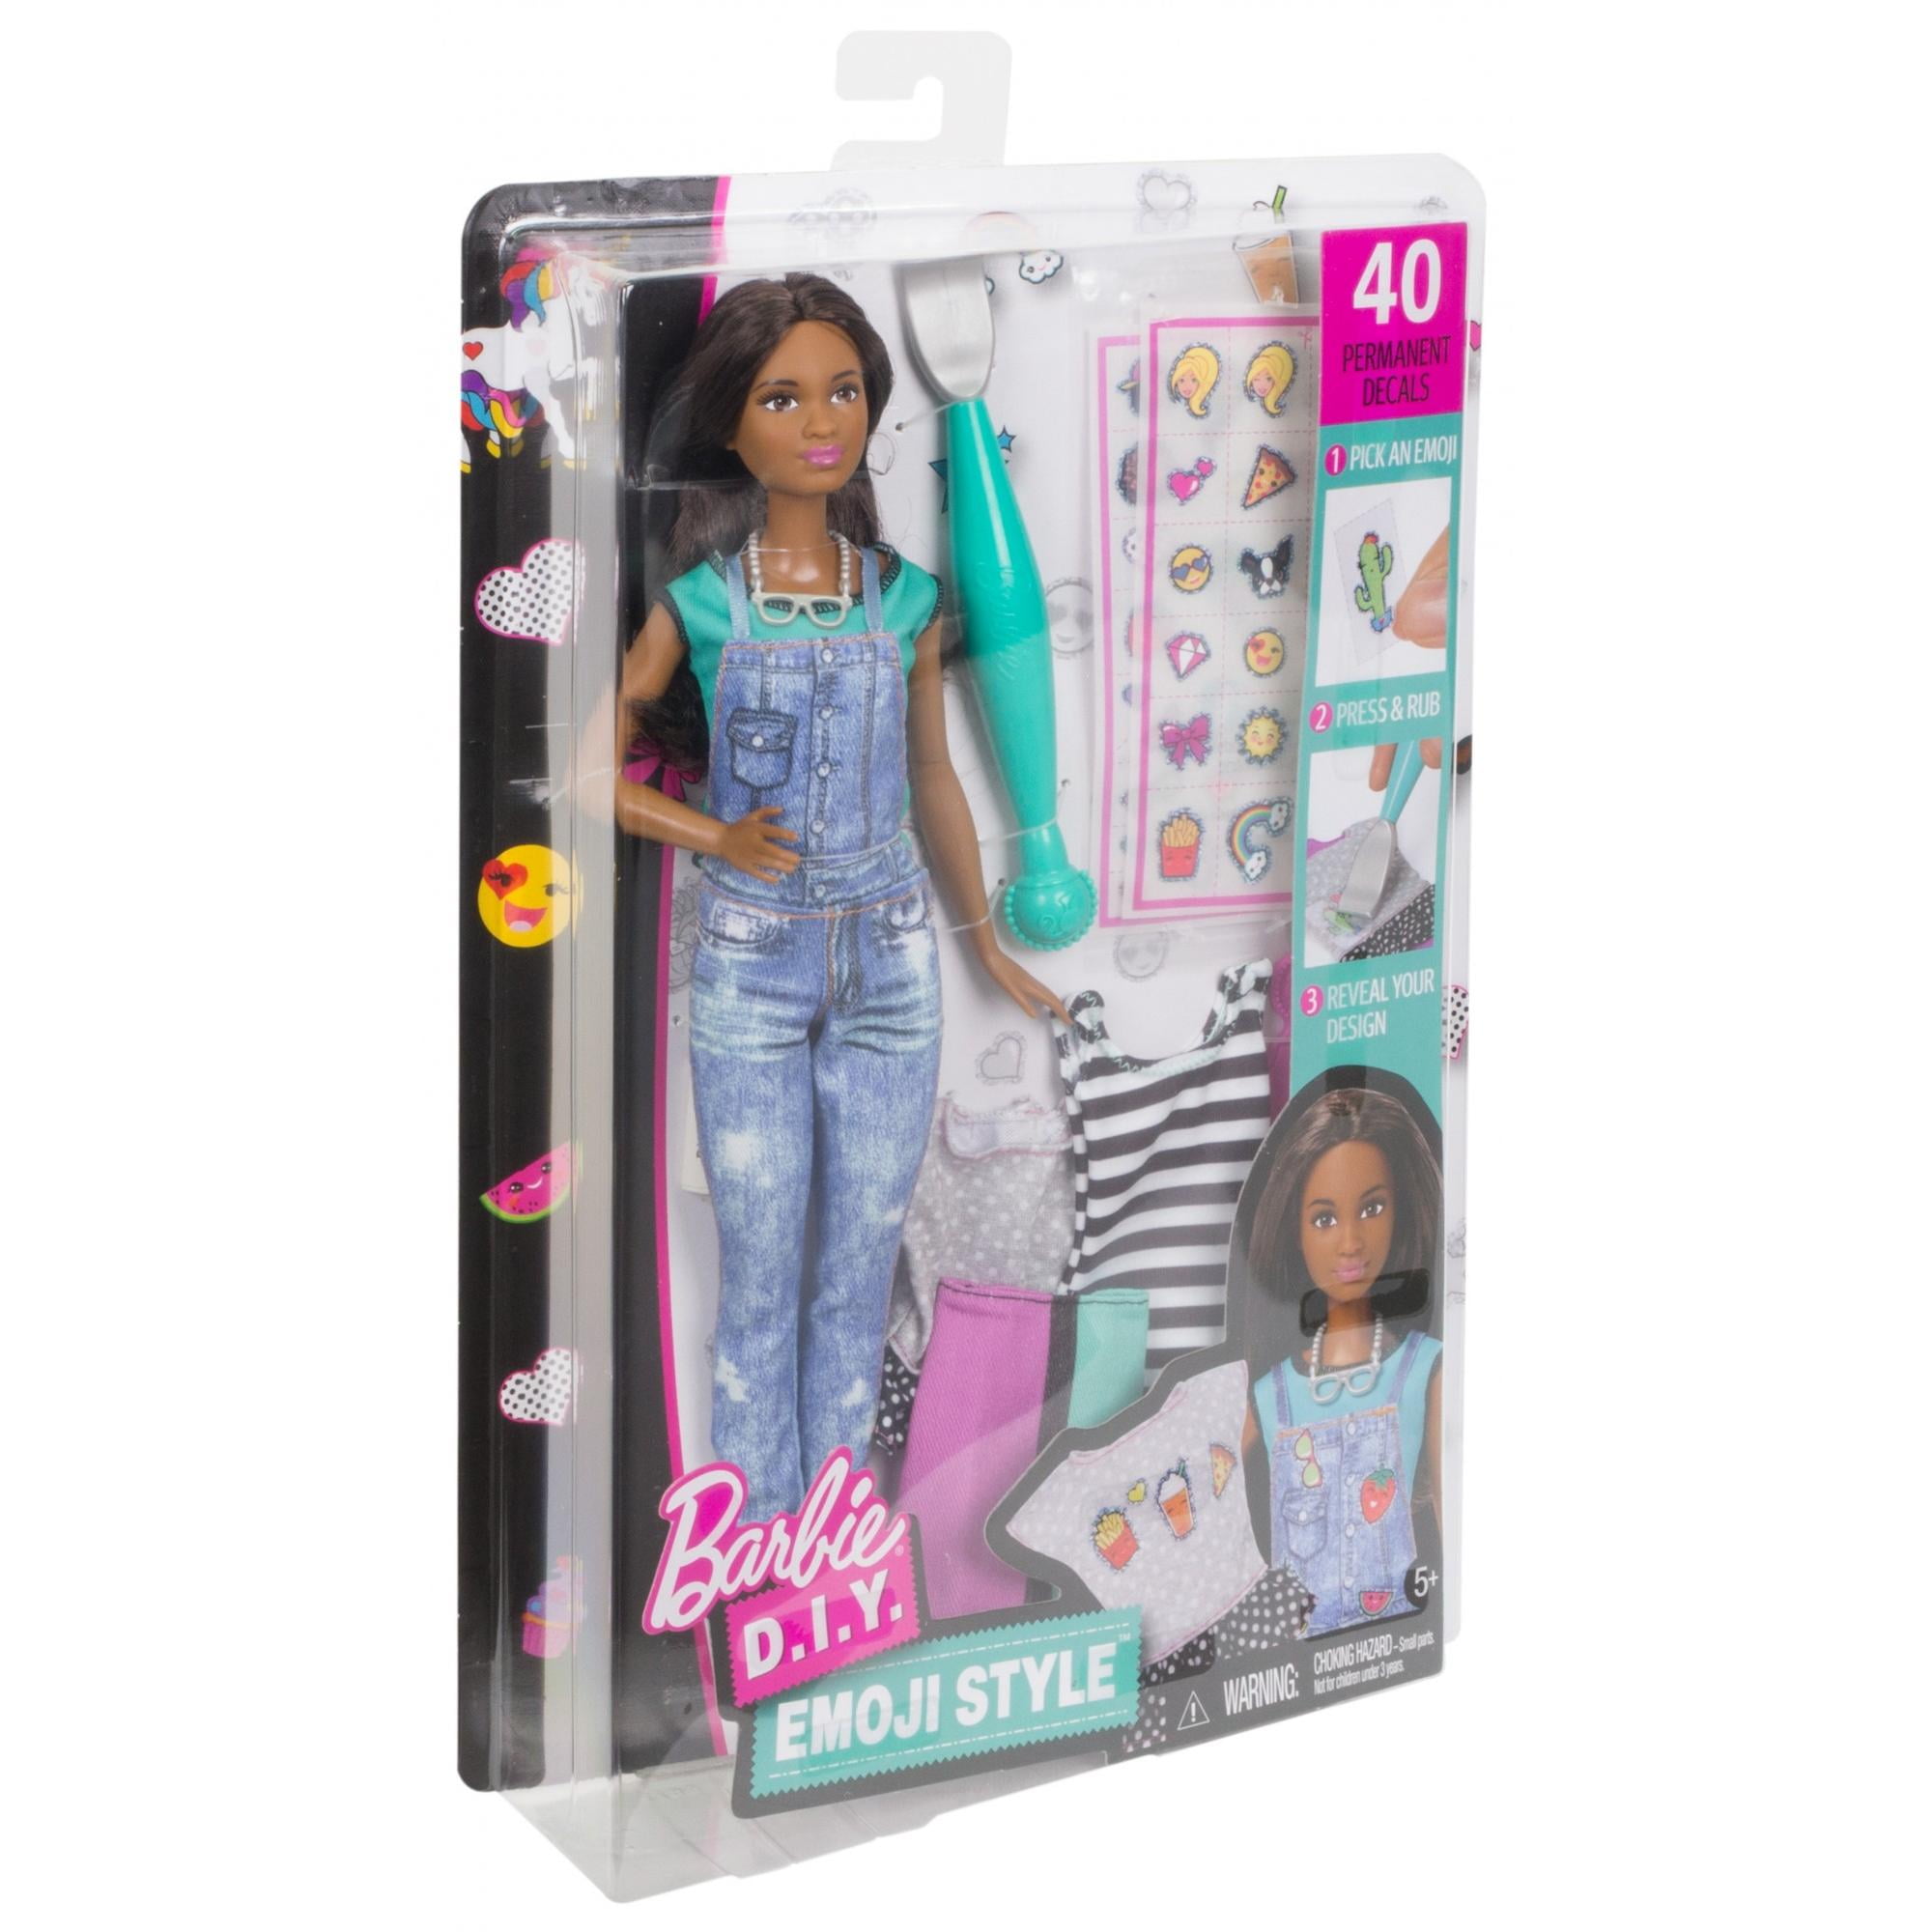 barbie diy emoji style doll